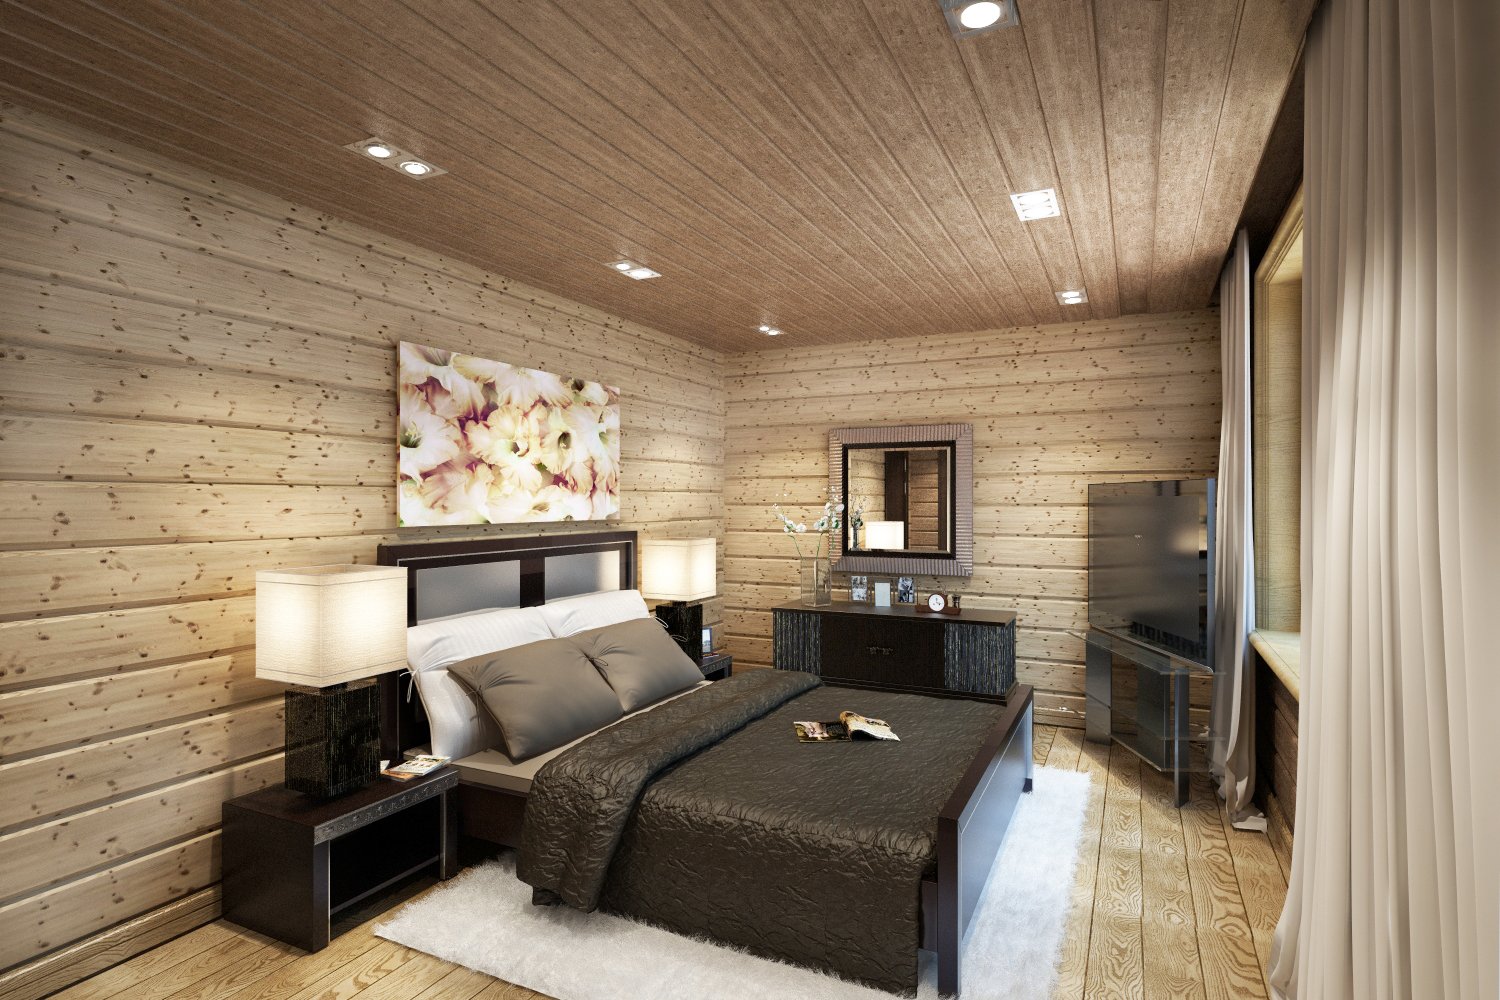 Вагонка в интерьере квартиры: дизайн и отделка стен в помещении с фото